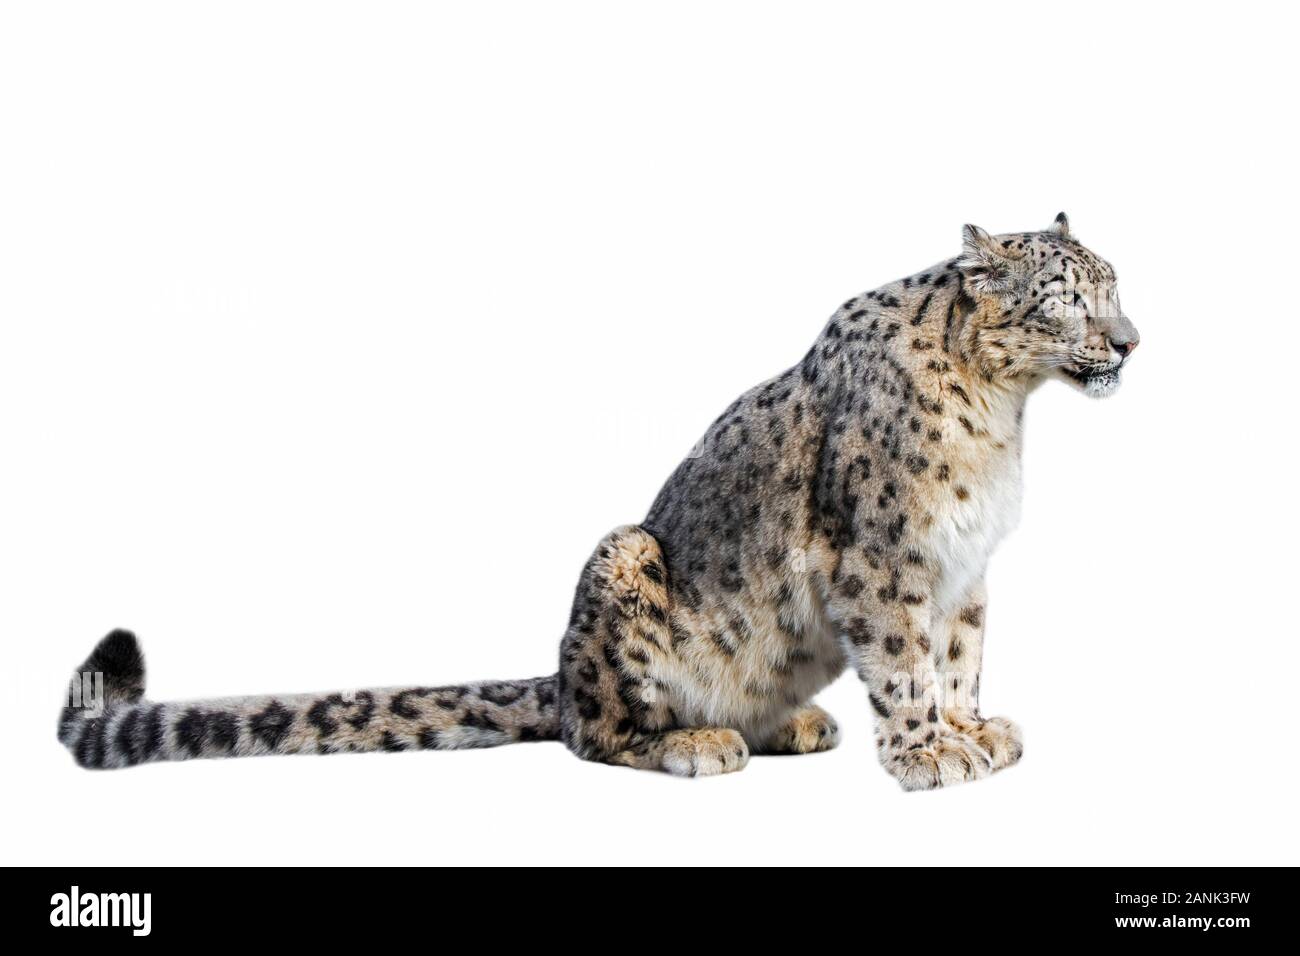 Snow Leopard / l'once (Panthera uncia Uncia uncia) / indigènes de la chaîne de montagne d'Asie centrale et du Sud contre l'arrière-plan blanc Banque D'Images